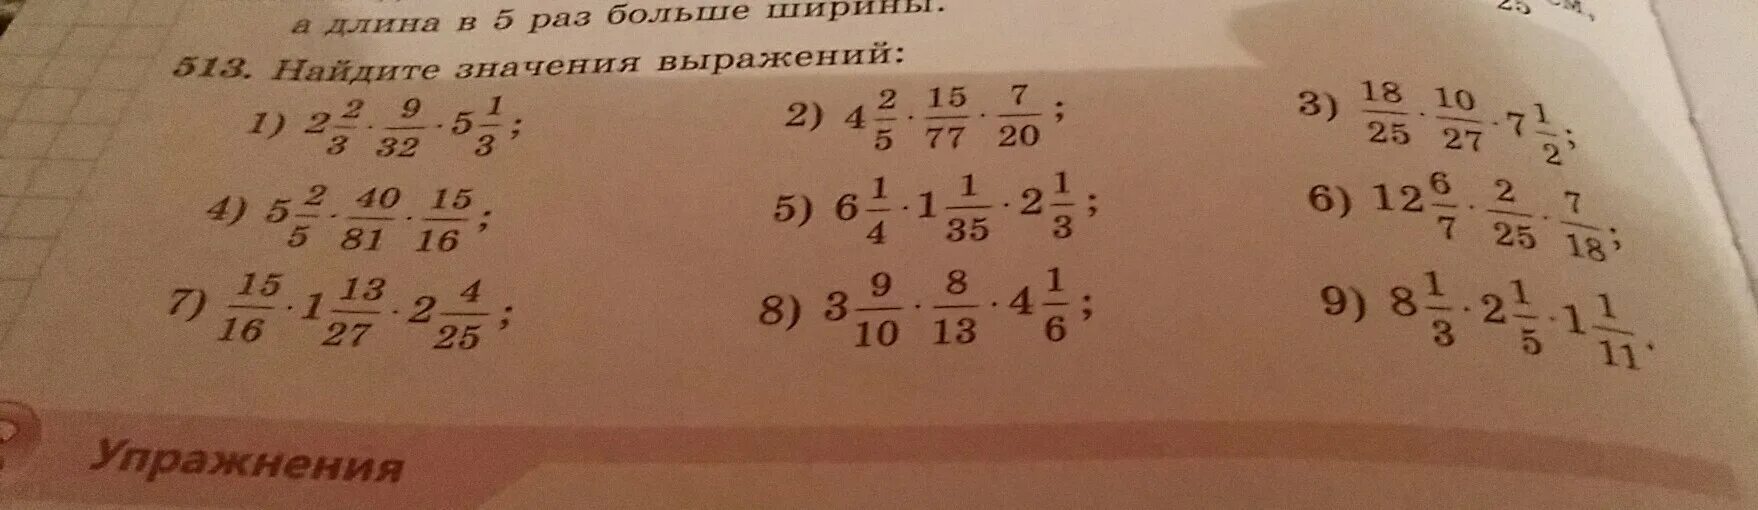 Найдите значение выражения 8 25. Найти значение выражения 4*1/3-1/2. Вычислите 2/25+1/4. Значение выражения 1 1 4 1 1 2. Вычислите 27 1/2 1/9 3/4 4/3.